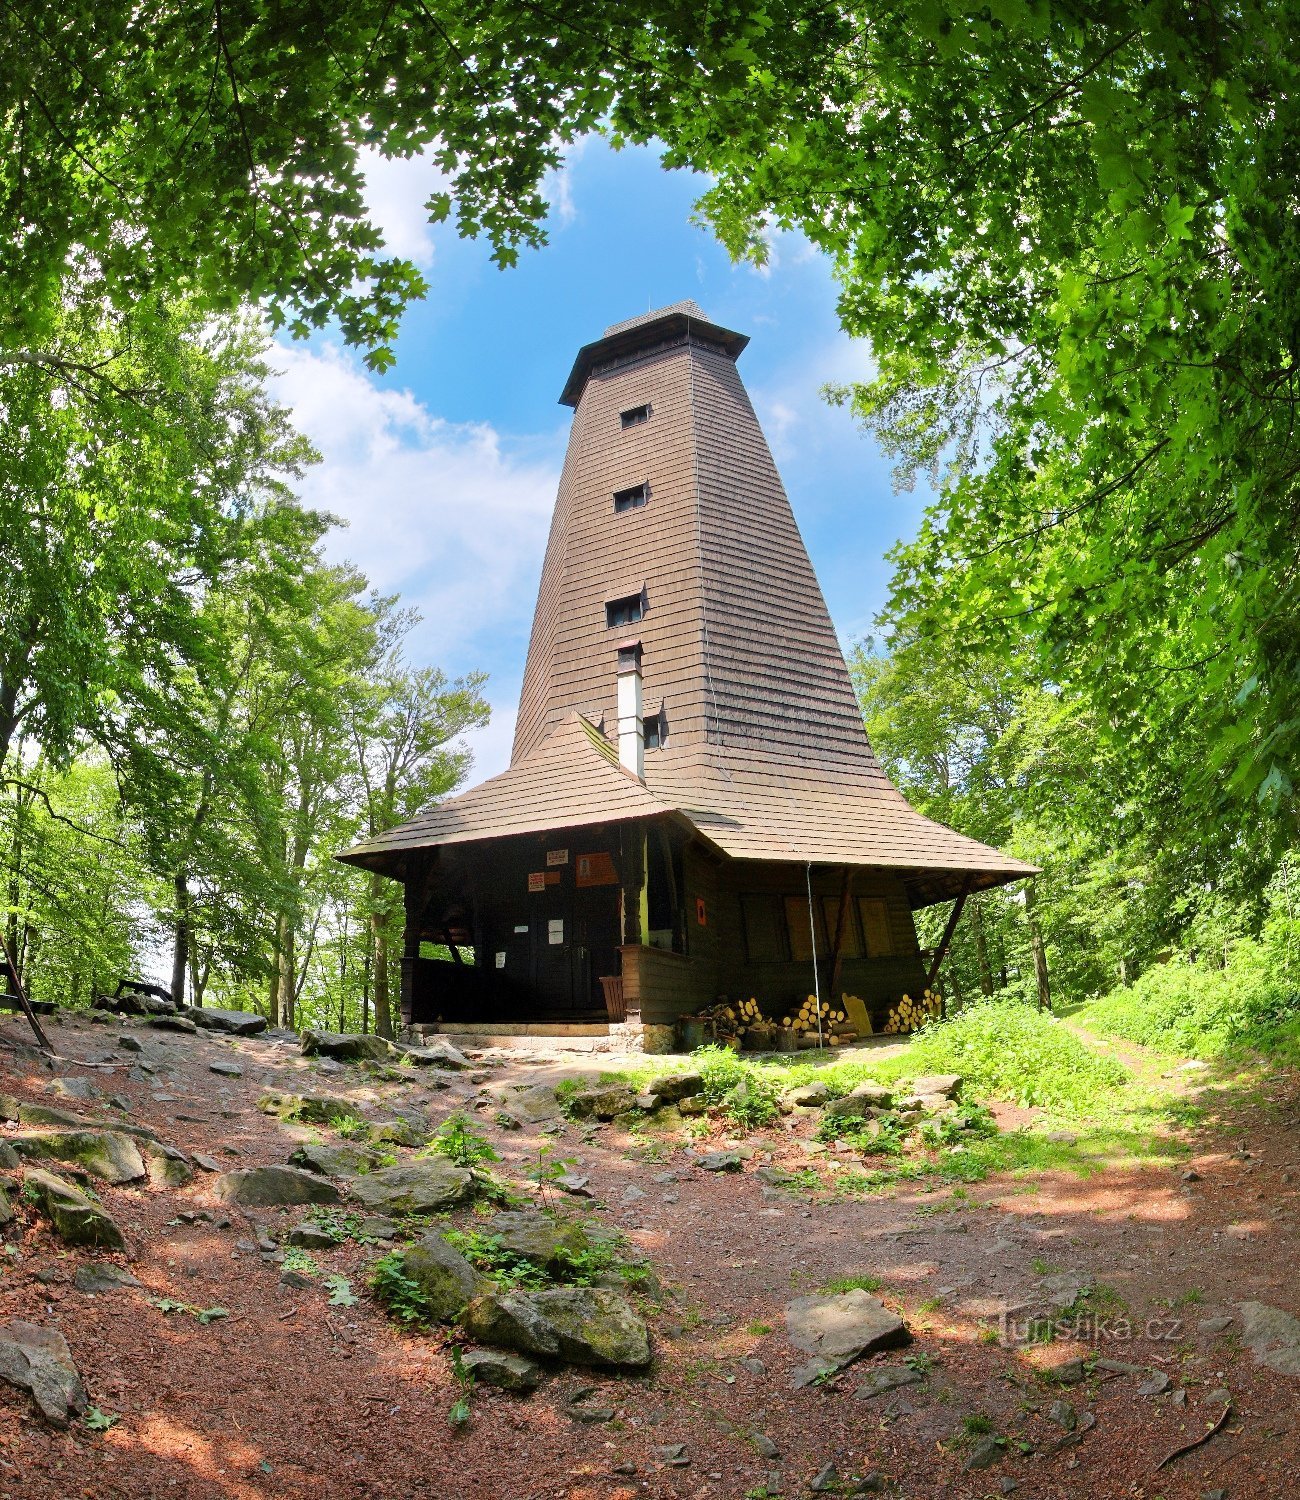 No topo de Velké Blaník, você será recompensado com uma torre de observação.